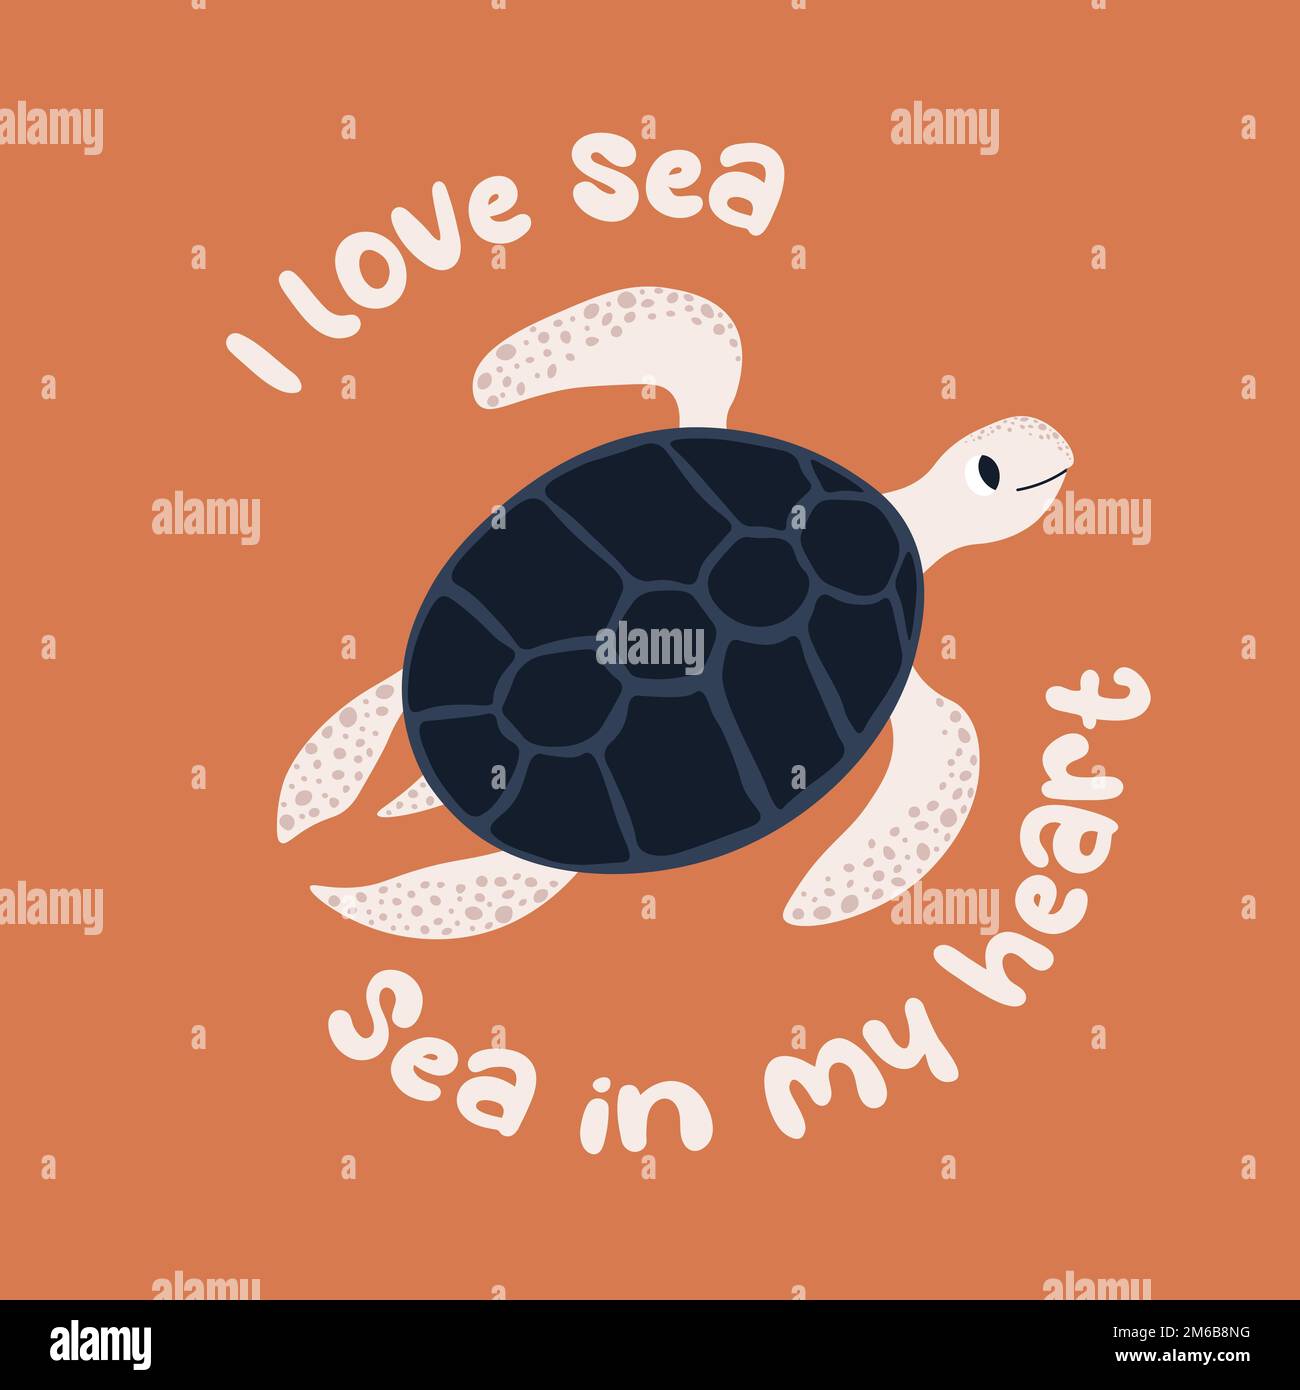 Vektor-Ozean-Illustration mit Schildkröte. Ich liebe das Meer, das Meer in meinem Herzen - moderne Schriftzeichen. Unterwassertiere. Ökologisches Design für Banner, Flyer Stock Vektor